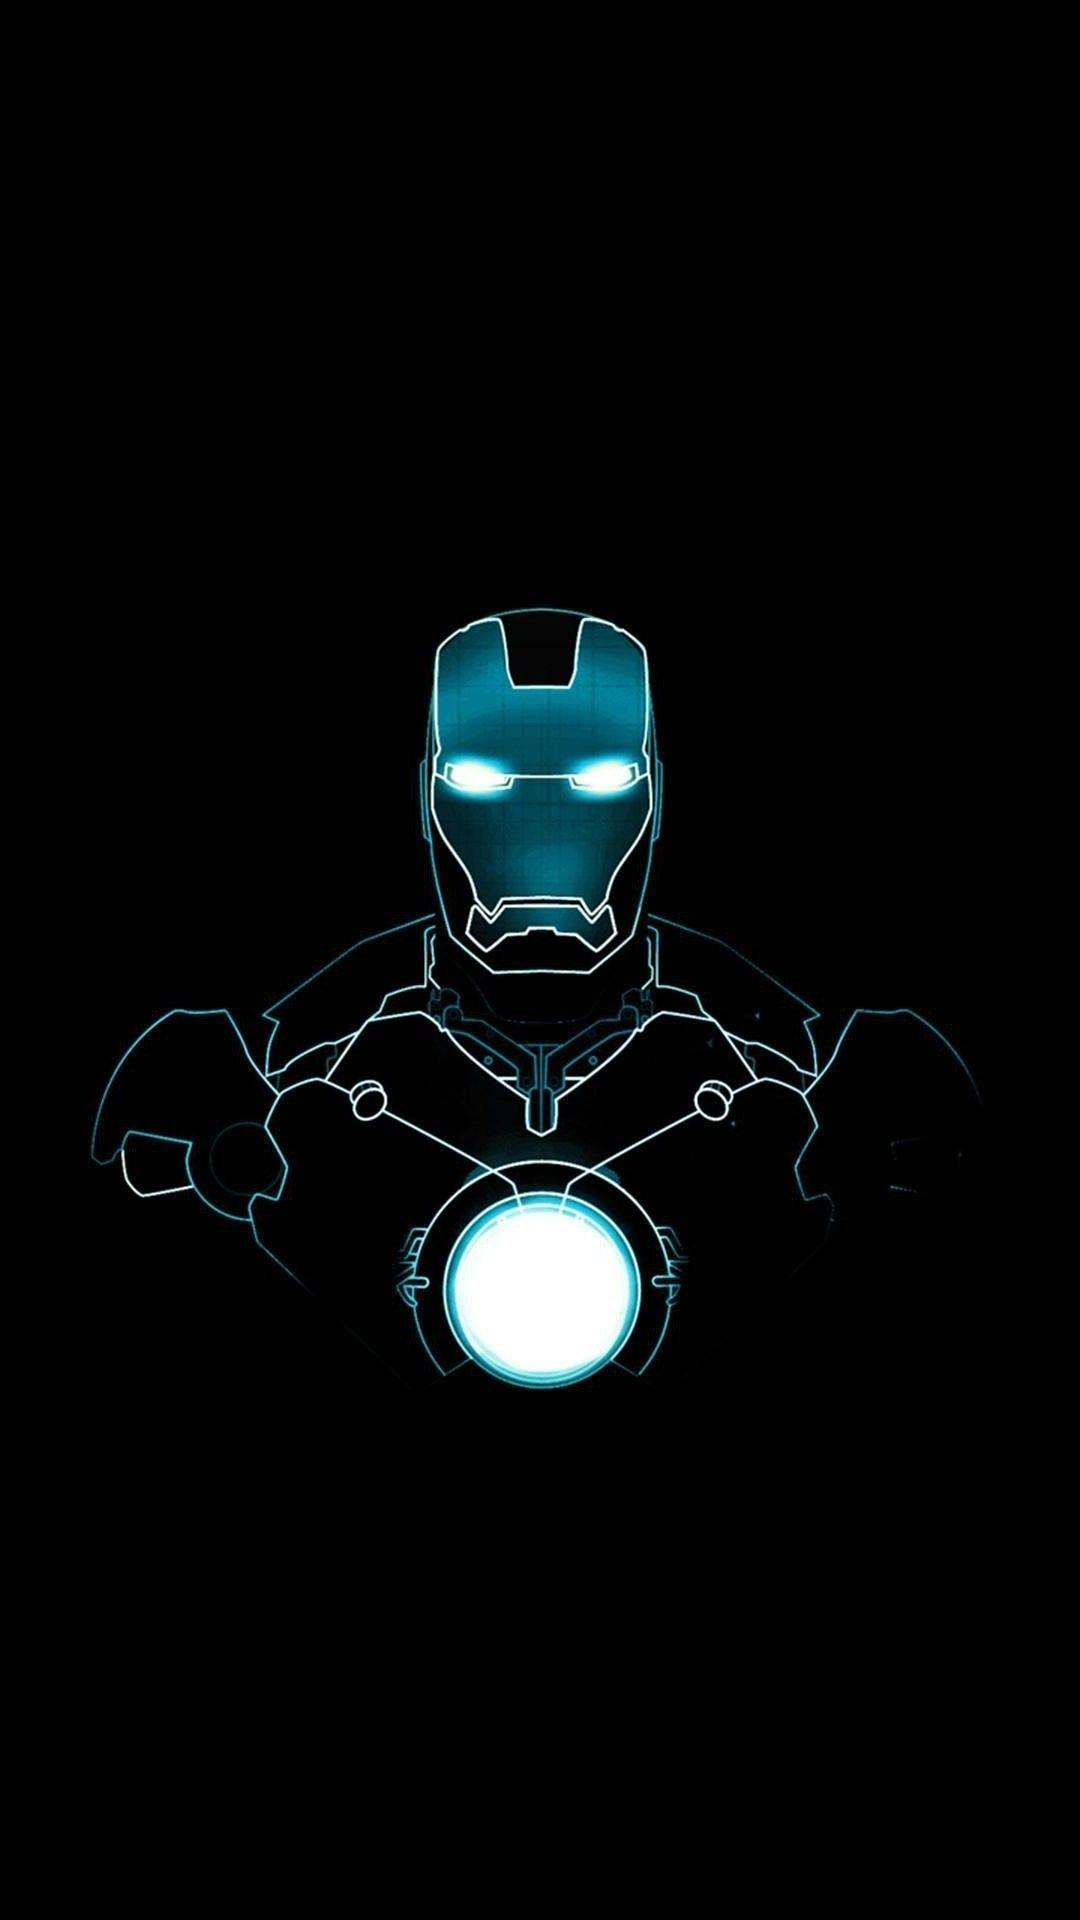 Hình nền Iron Man 4K là một tác phẩm nghệ thuật điện ảnh đẳng cấp cao, thể hiện sức mạnh siêu nhiên của siêu anh hùng này một cách rực rỡ và sống động. Với độ phân giải 4K, bạn sẽ được trải nghiệm tất cả các chi tiết và màu sắc chân thực nhất, tạo nên một máy tính hoặc màn hình điện thoại đẹp như mơ.